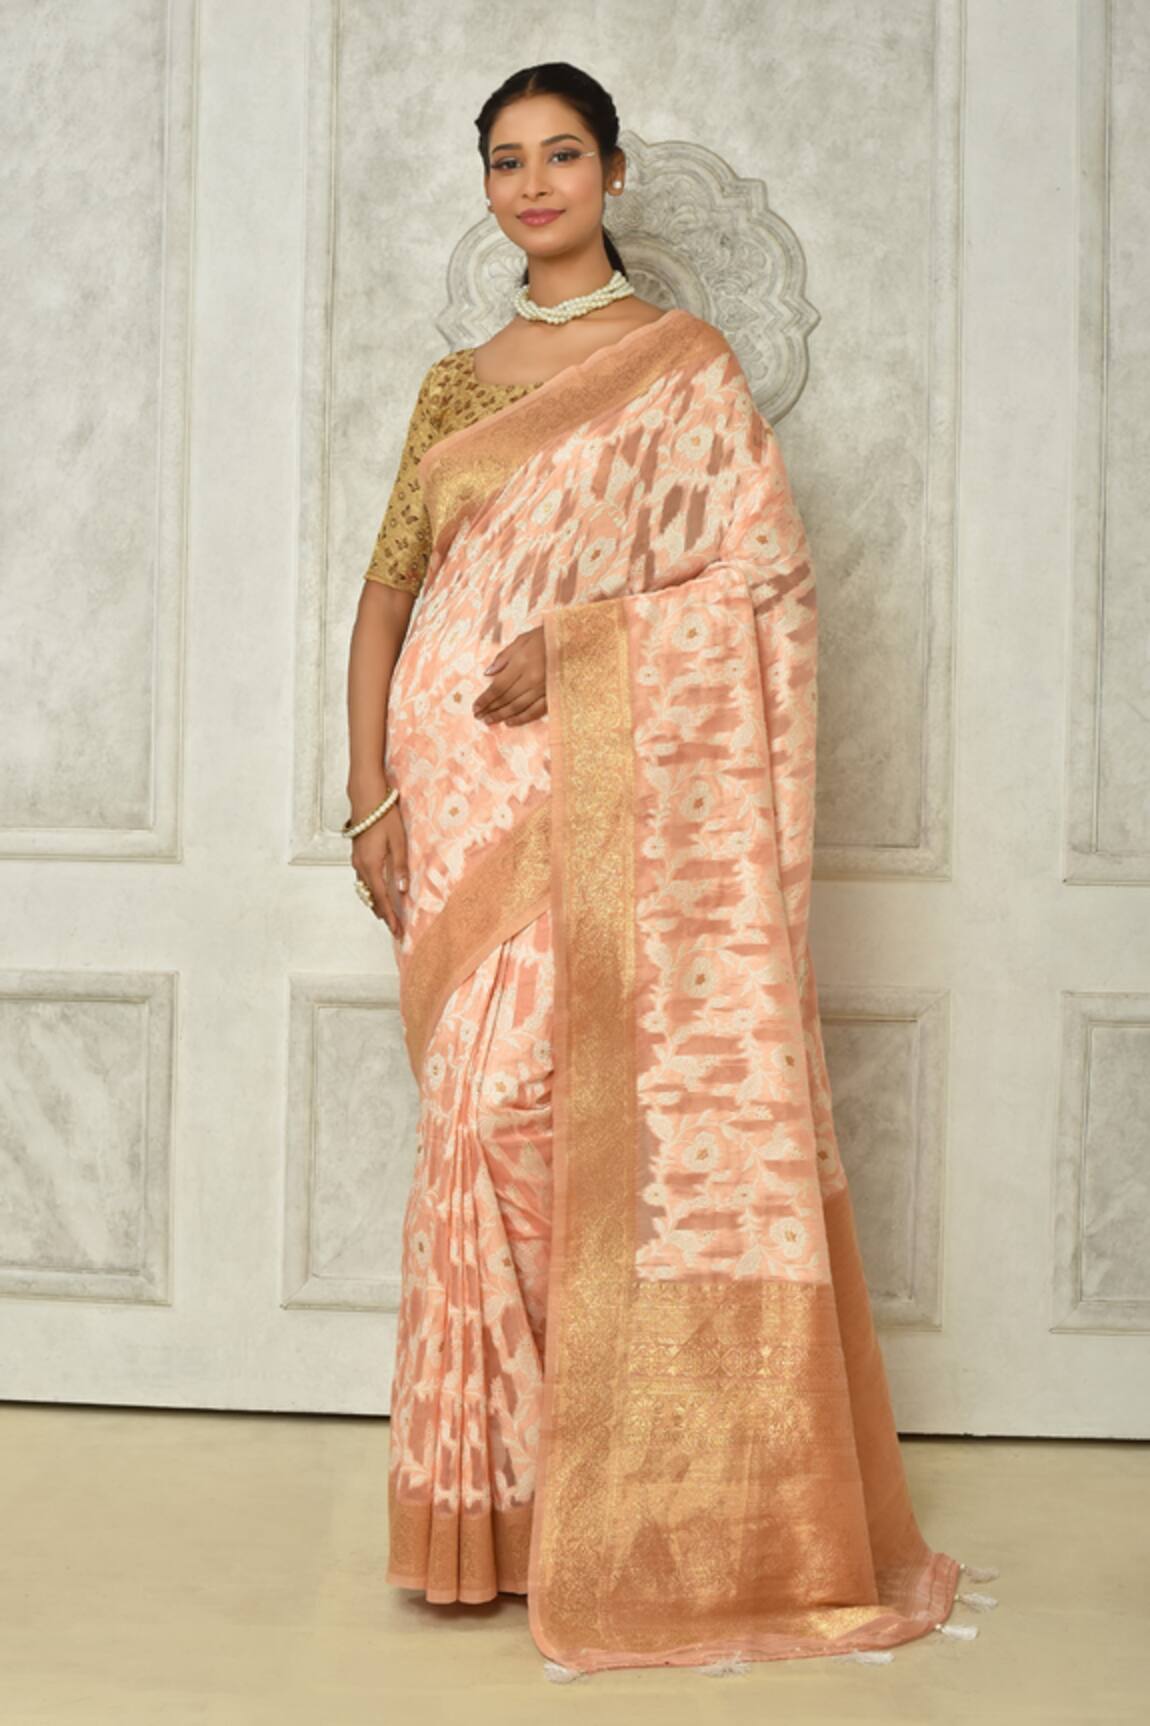 Samyukta Singhania Woven Cotton Saree With Running Blouse